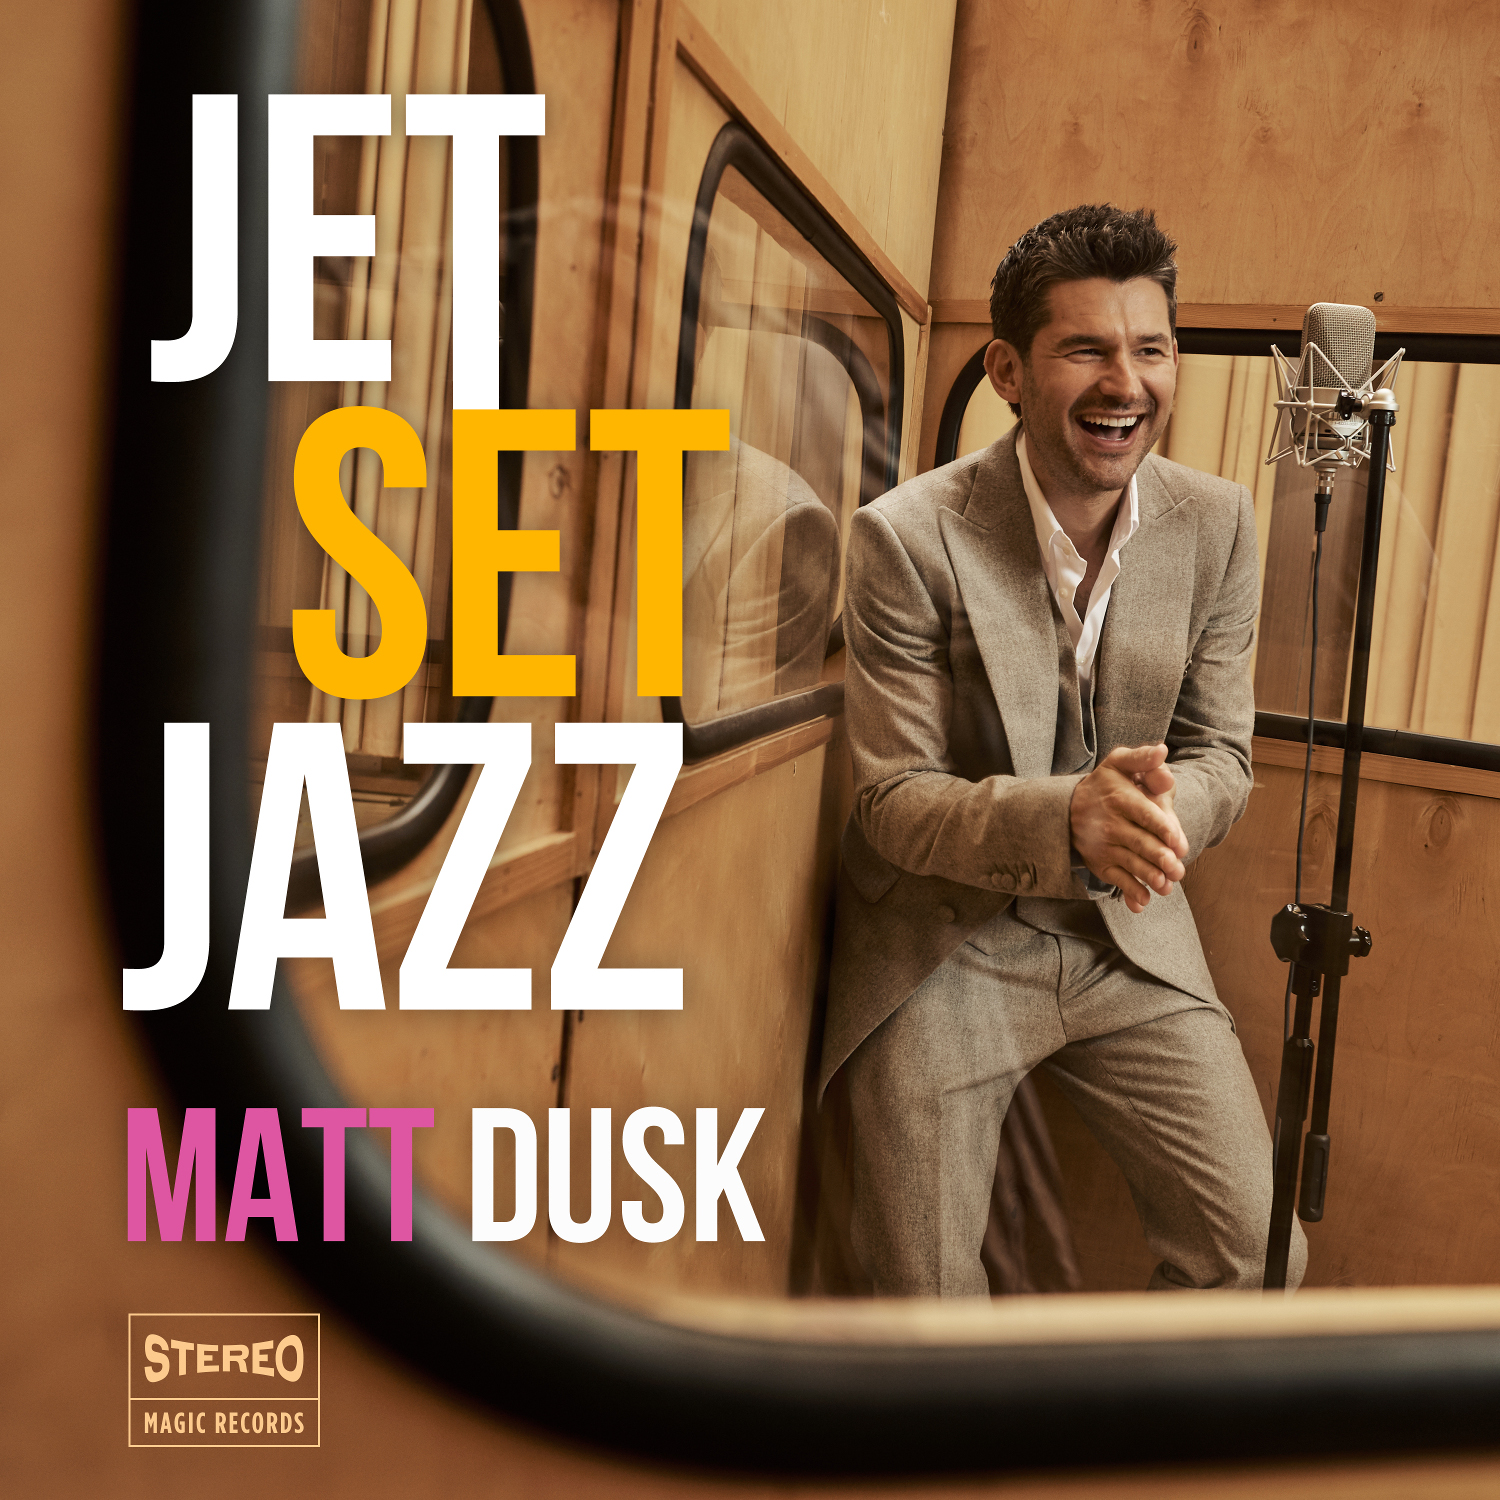 Matt Dusk promował najnowszy album JetSetJazz w Polsce